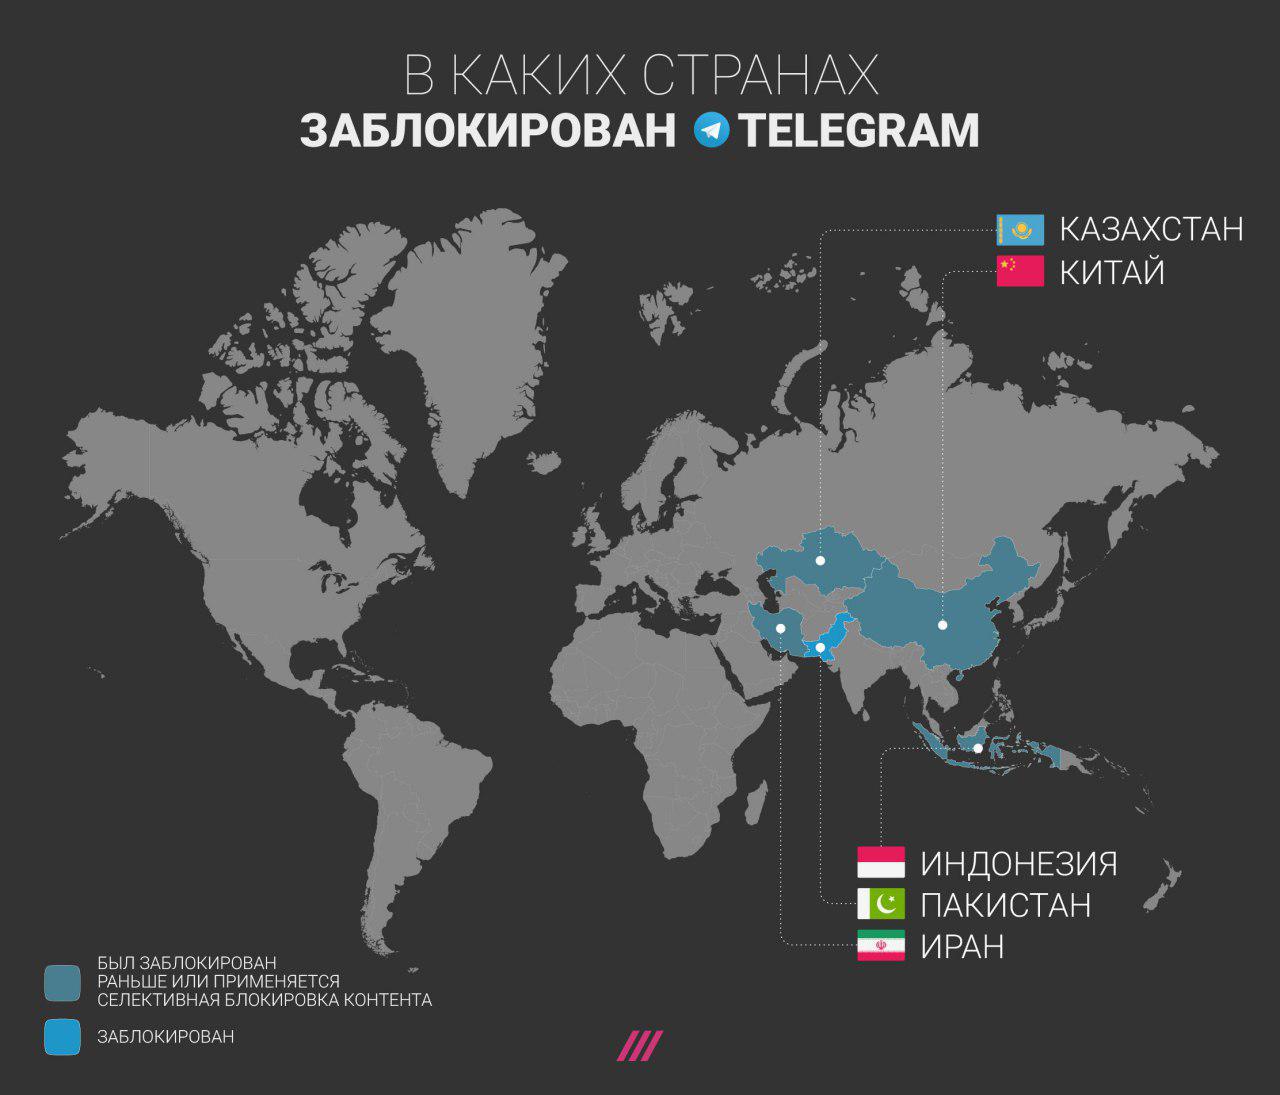 Тг канал порнхаб. Телеграмм государство. Telegram страны использования. В каких странах пользуются телеграмм. Телеграмм пользователи стран.